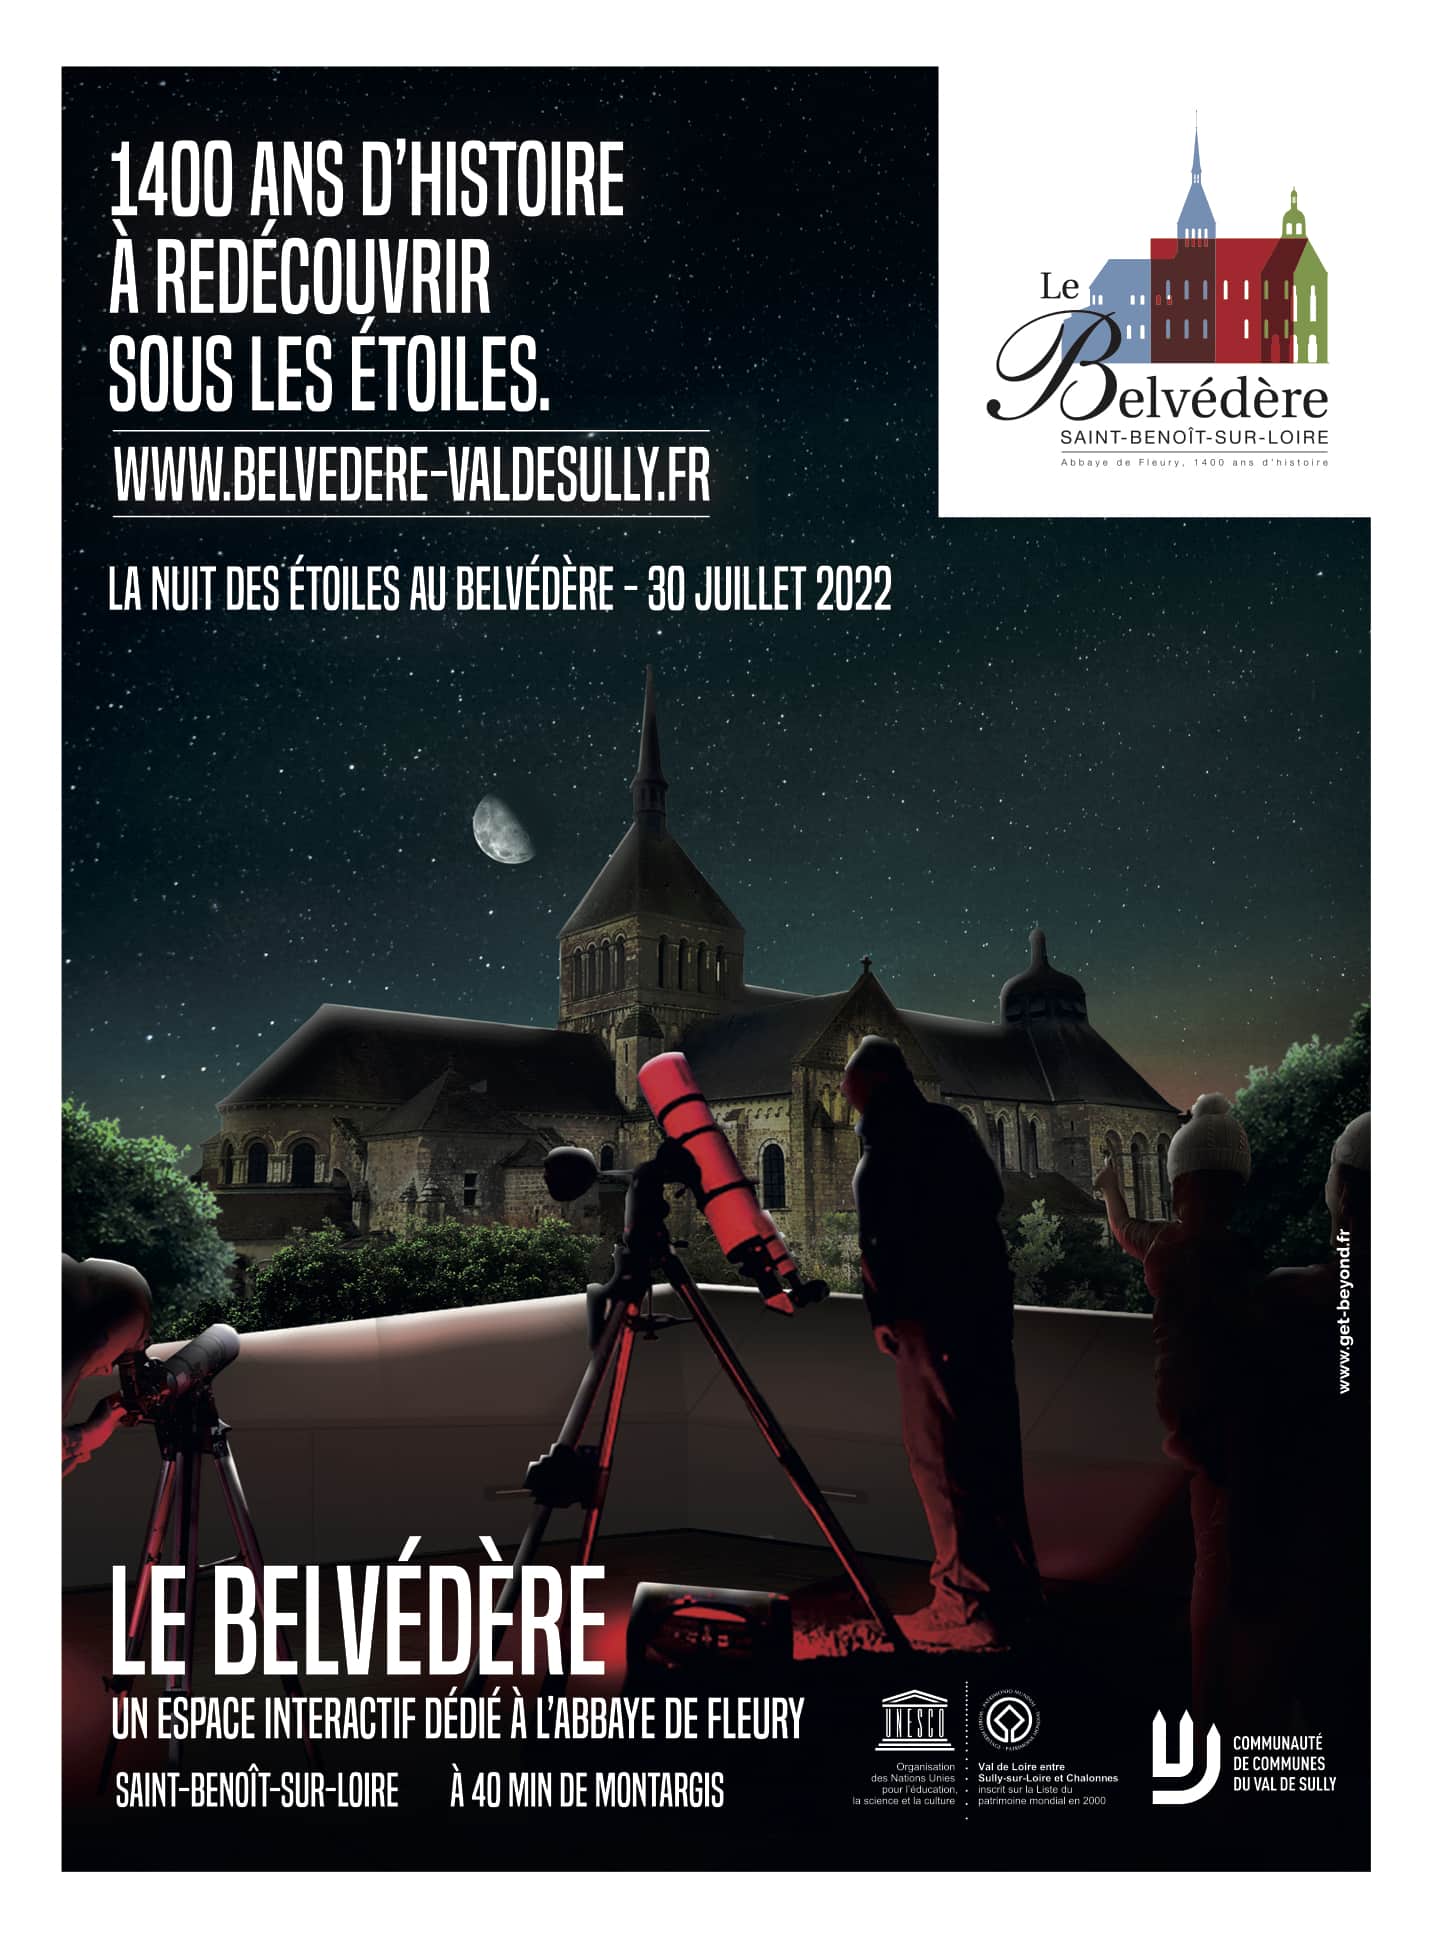 Affiche Kandoua - Reférents Etudiants - Bourges